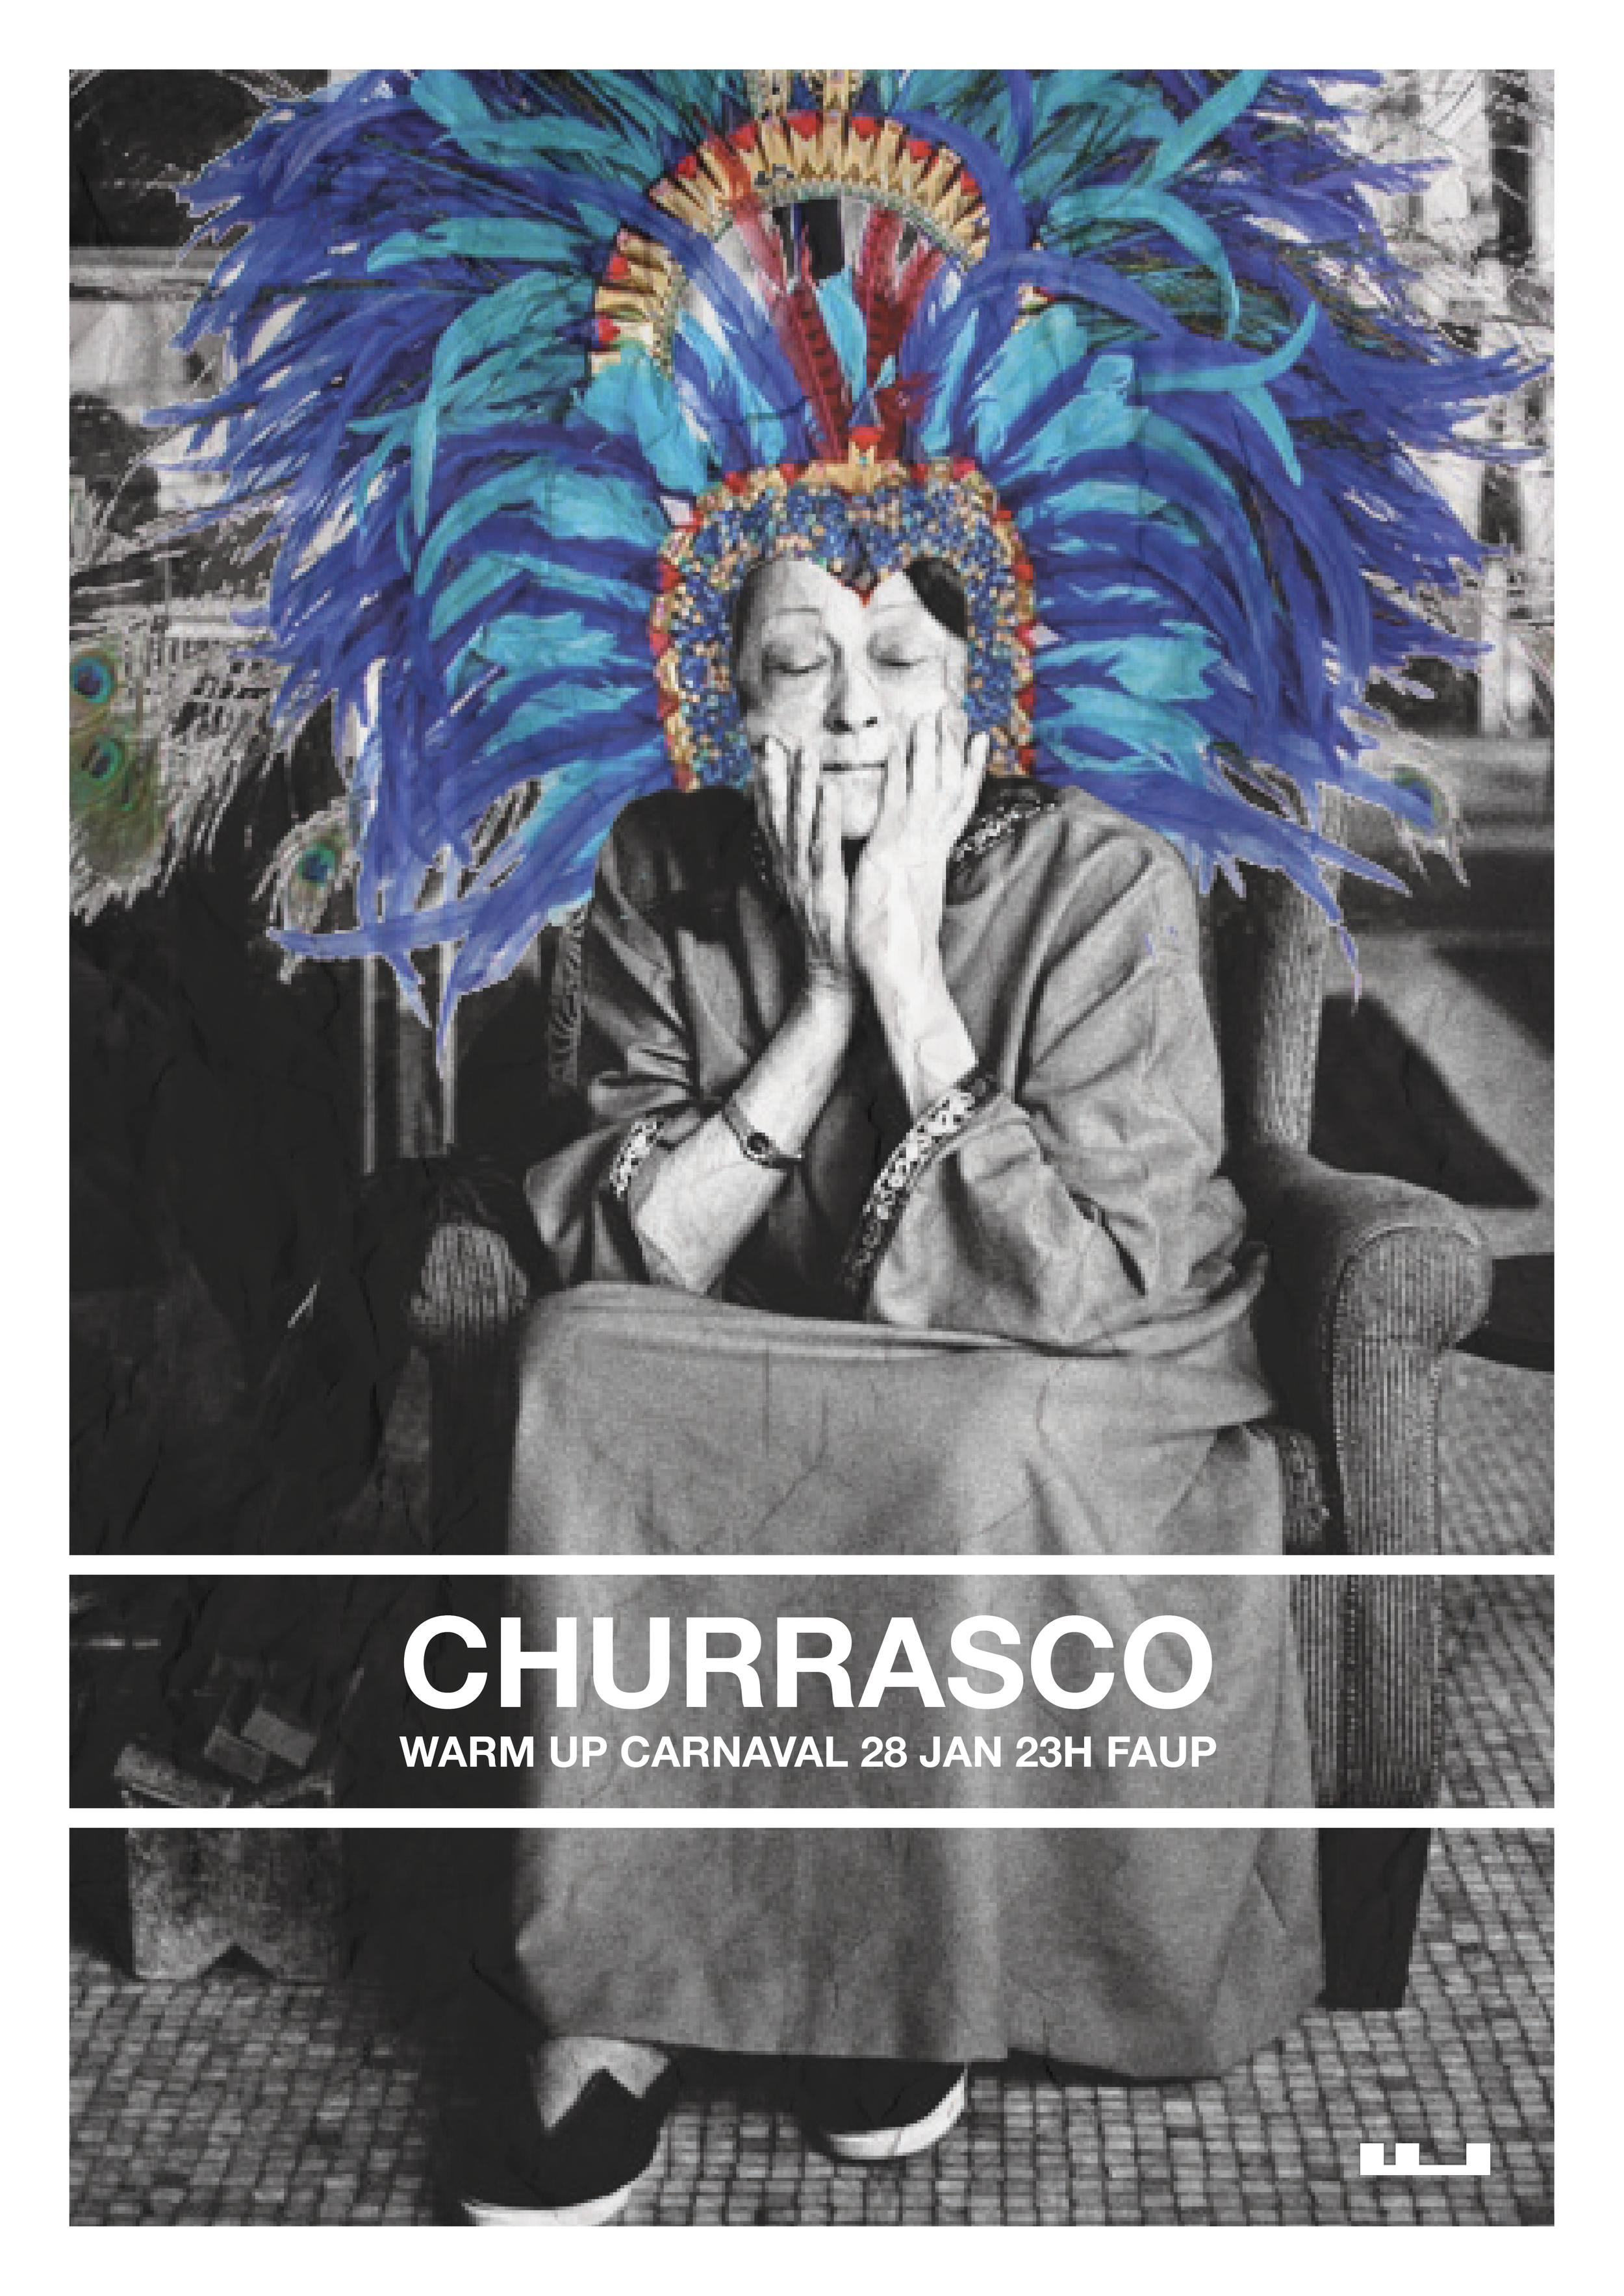 Churrasco Carnaval 2016